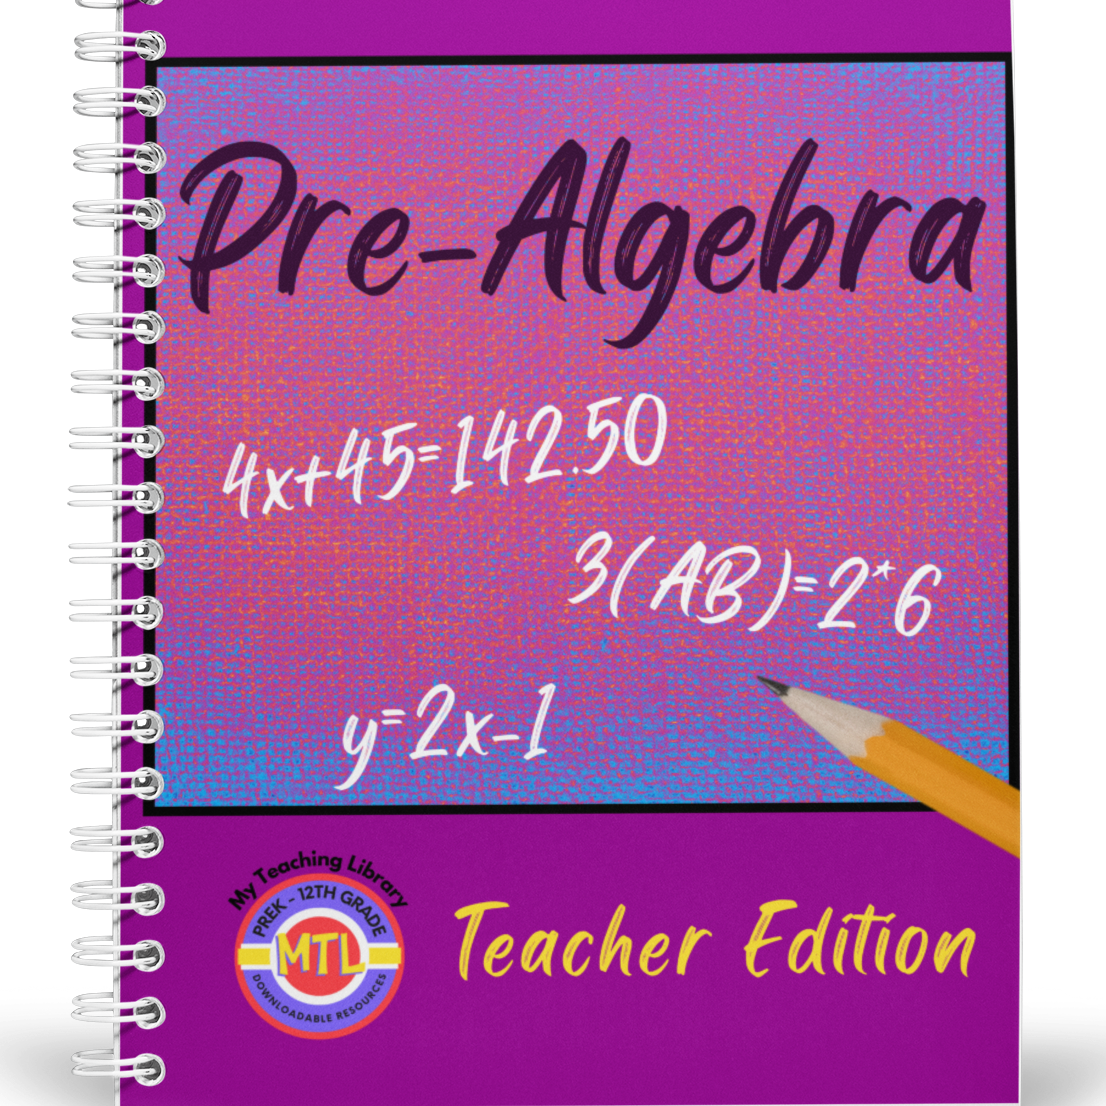 Z 317 Pre-algebra - Teacher